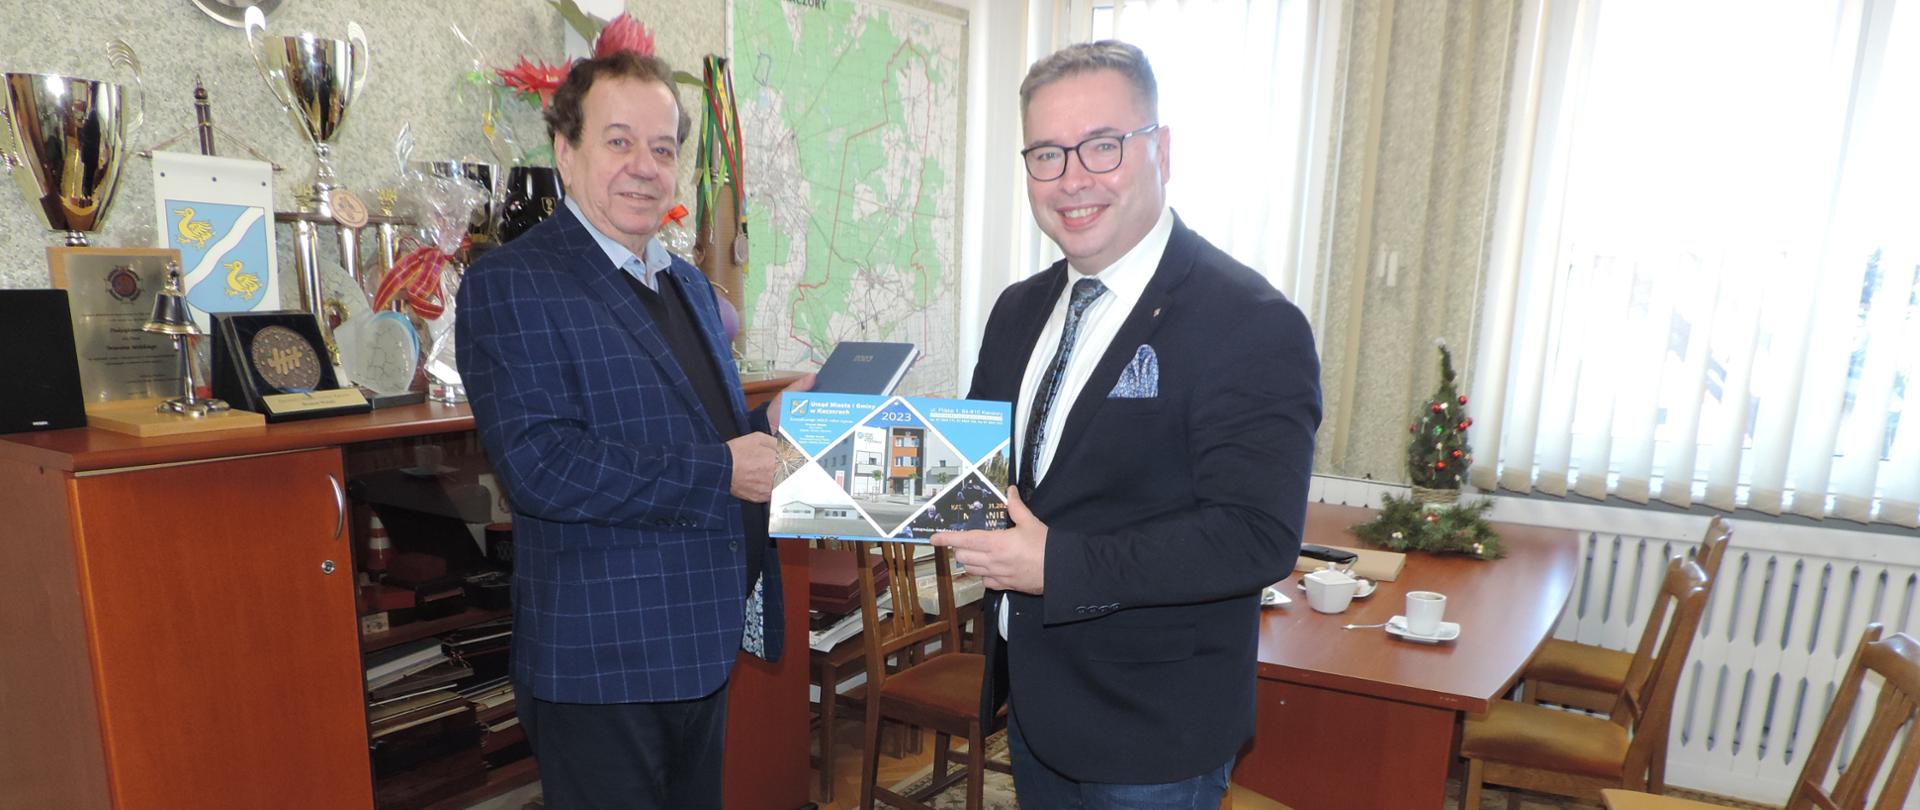 Na zdjęciu widać burmistrza Brunona Wolskiego i Pana Jacka Bogusławskiego – Członka Zarządu Województwa Wielkopolskiego